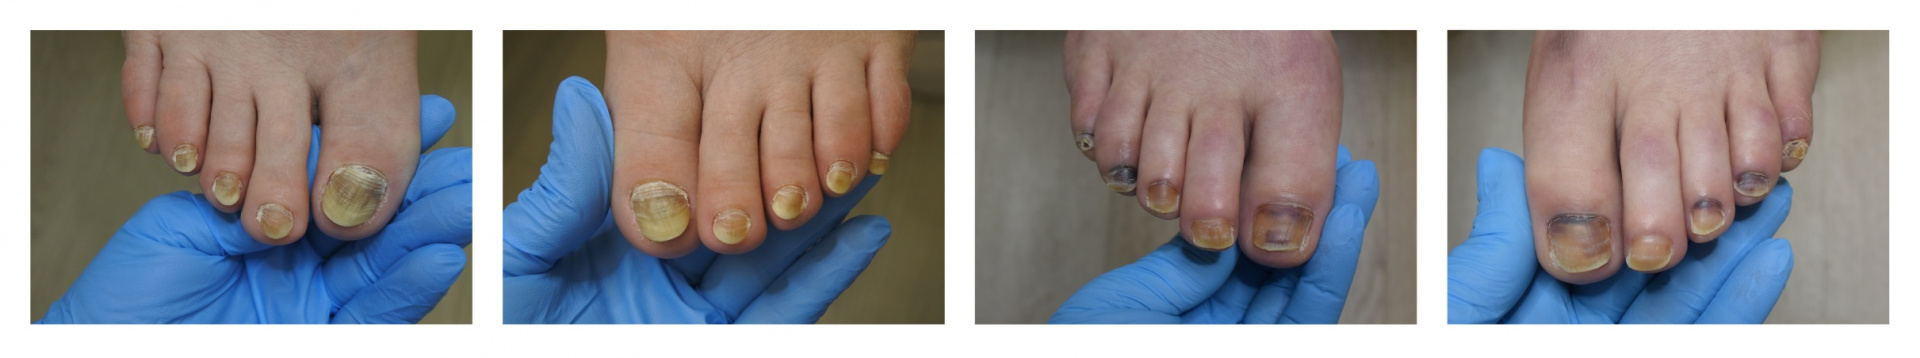 Примеры поражения ногтевых пластин в процессе лечения онкологических заболеваний.jpg